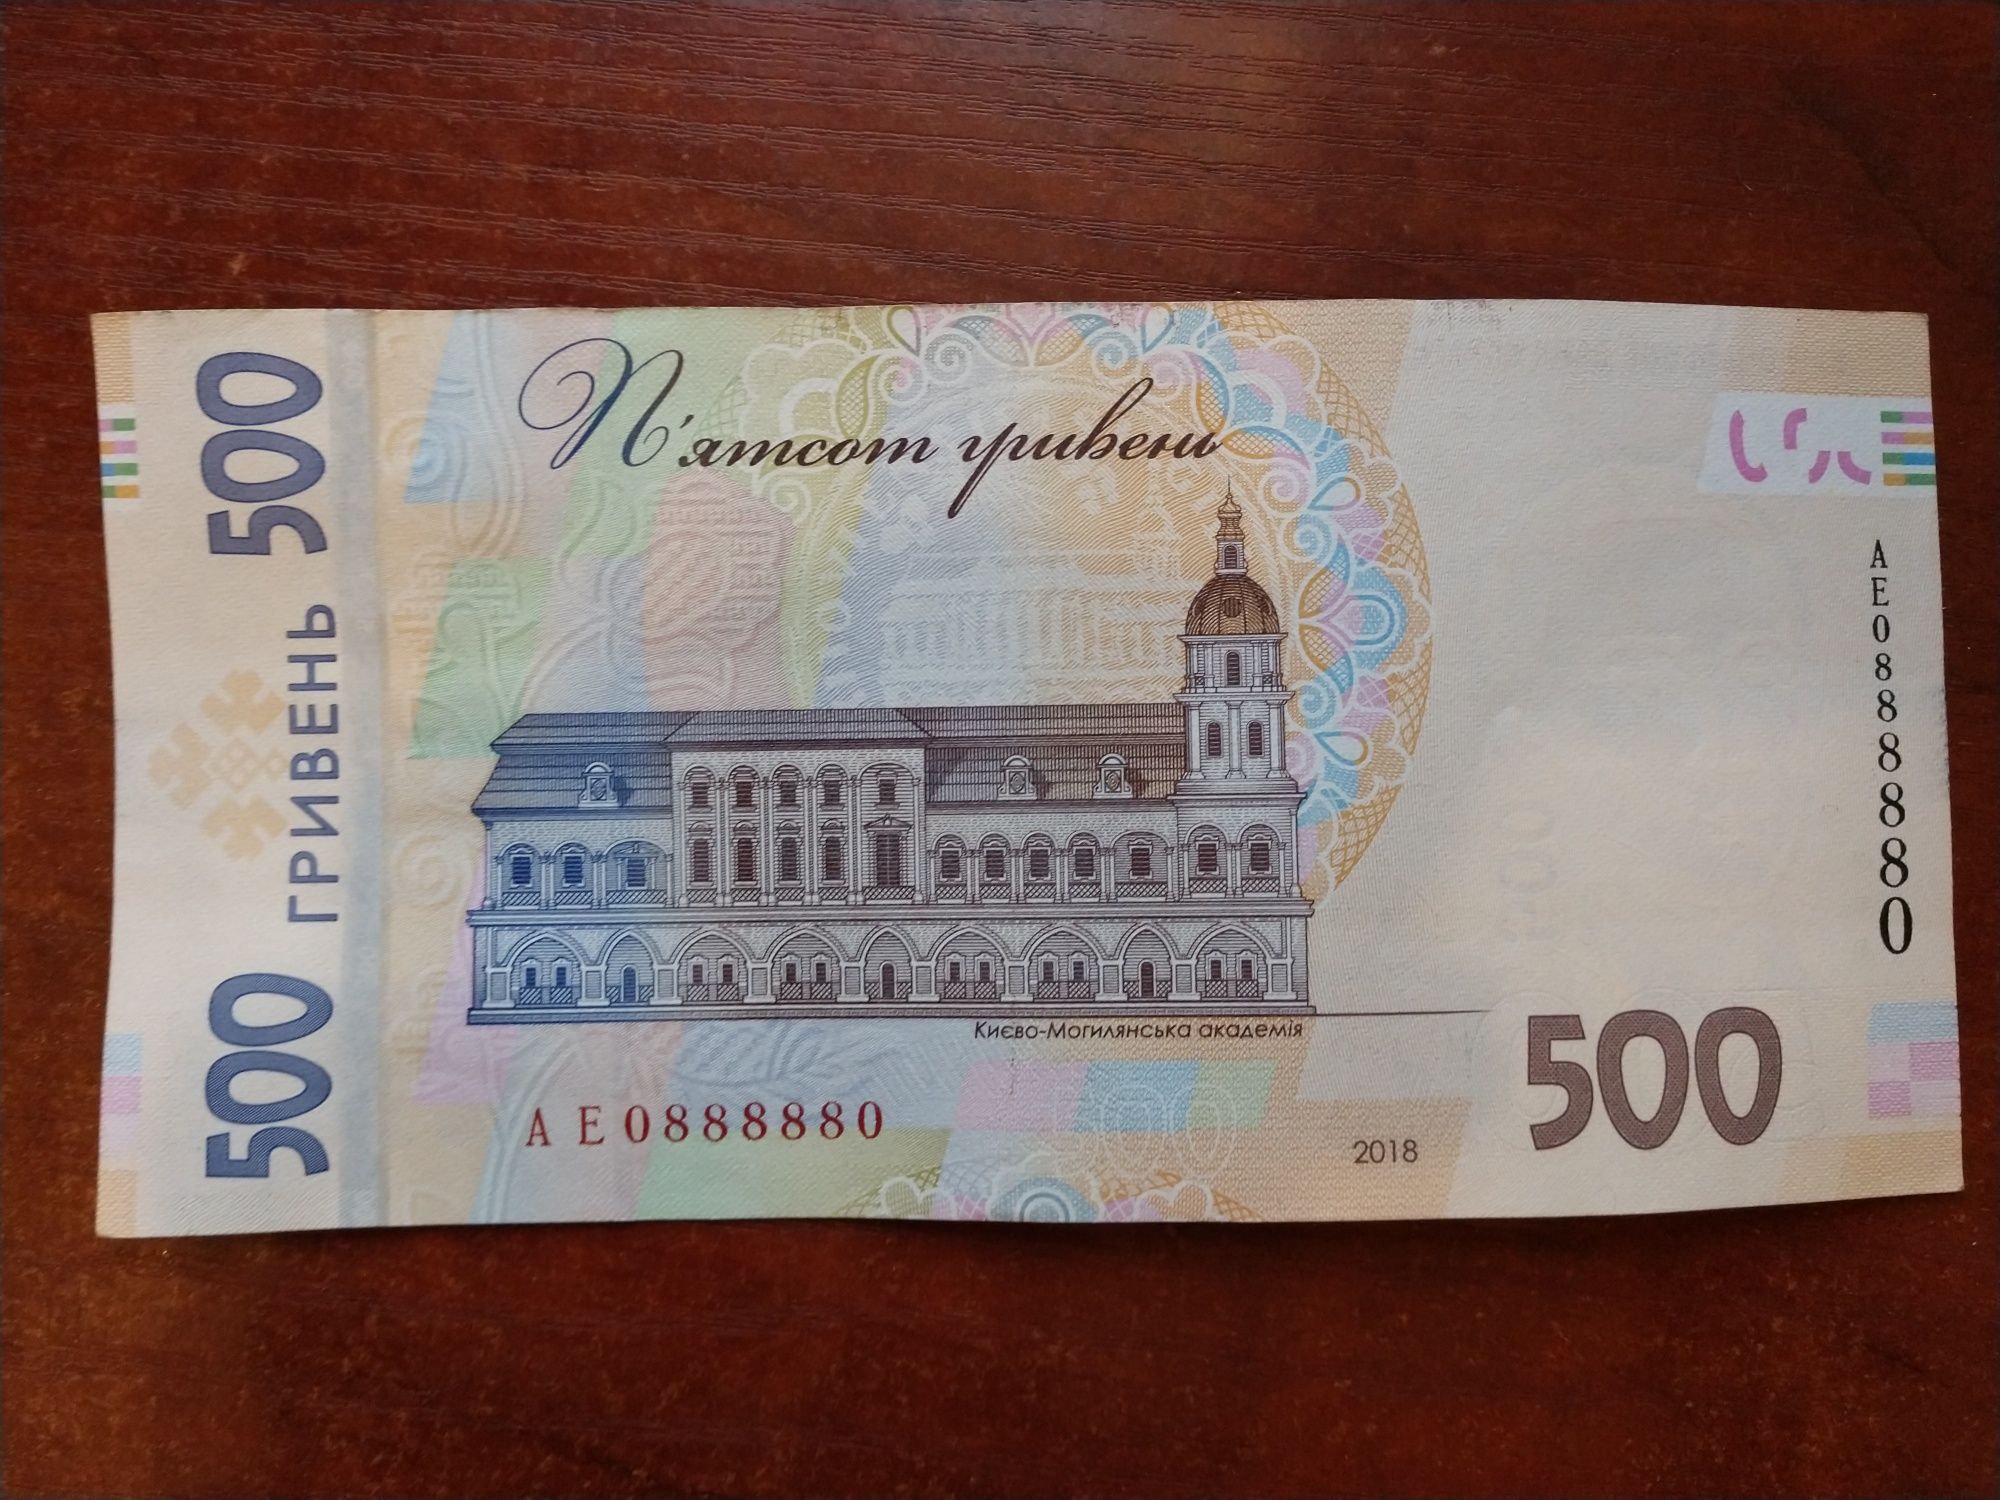 Банкнота 500 гривен номер радар 0888880